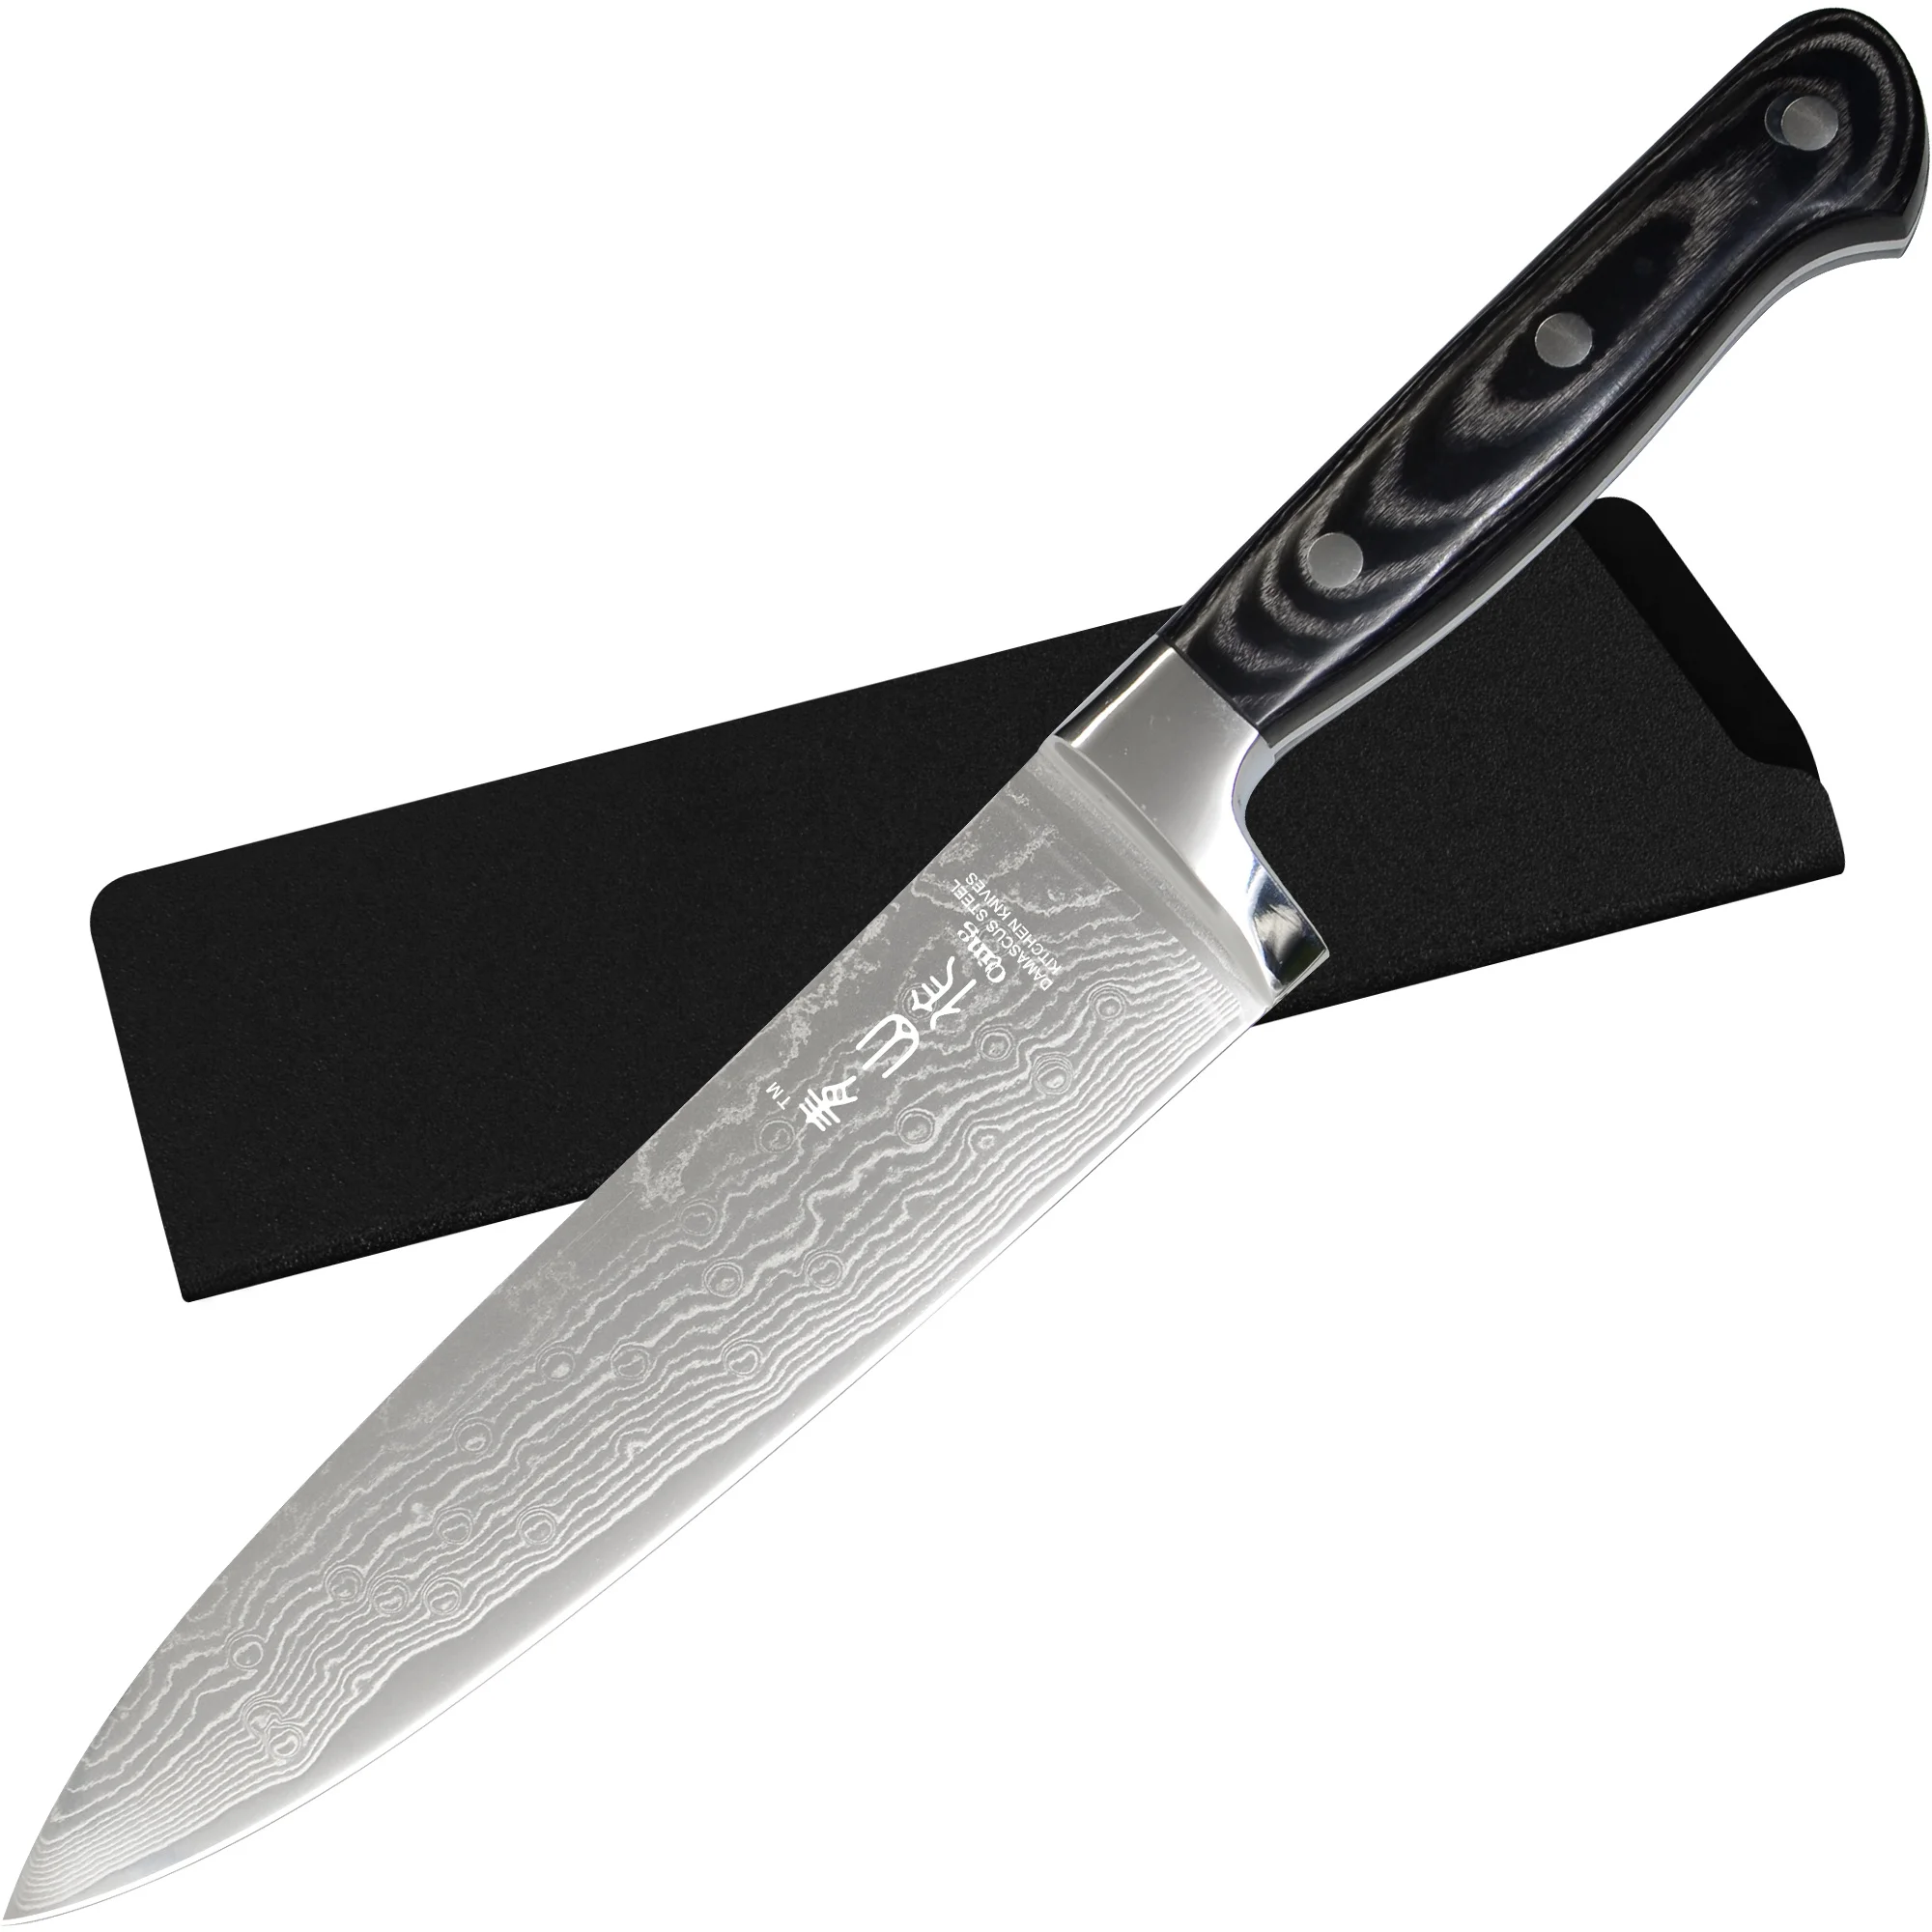 

XYJ полный нож шеф-повара из дамасской стали, 8 дюймов, кухонные ножи, бритва, острый лезвие Vg10 с полной деревянной ручкой, поставляется с крышкой